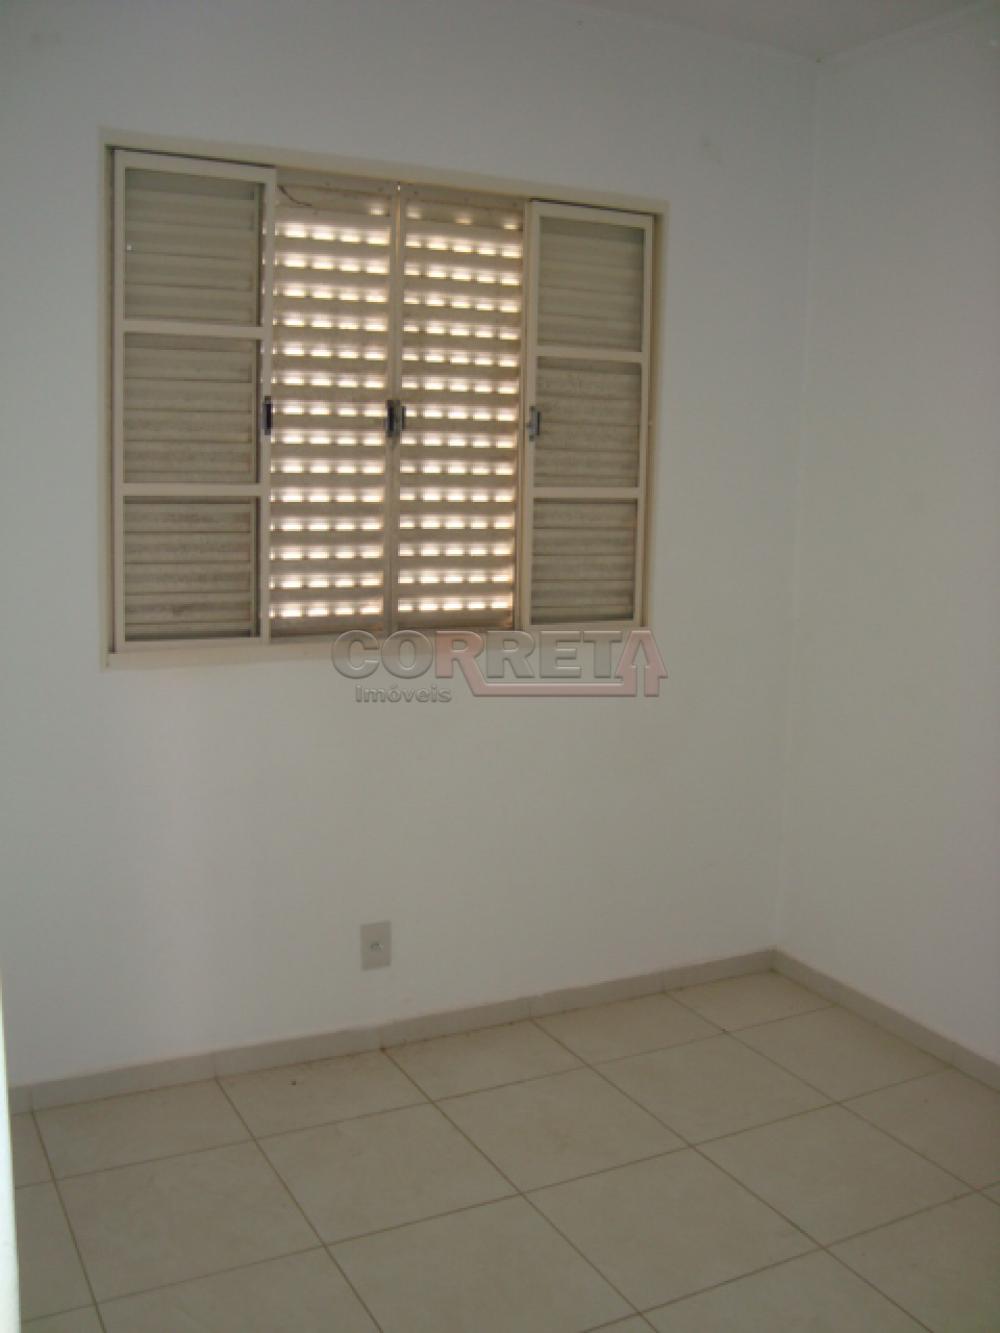 Comprar Apartamento / Padrão em Araçatuba R$ 160.000,00 - Foto 6